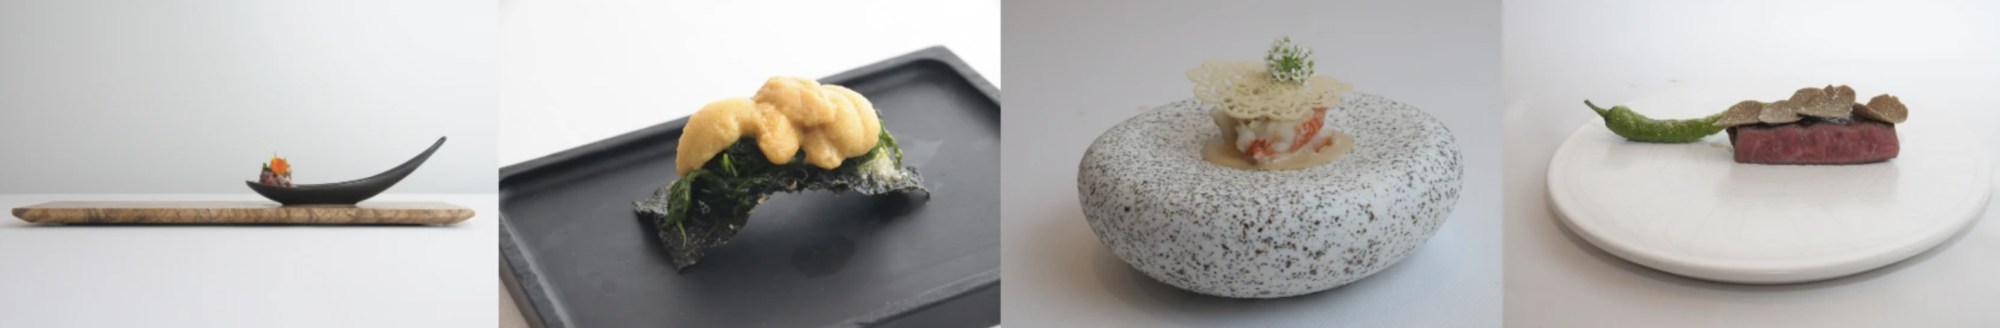 HOTEL VISON最上階のメインダイニングでは、サン・セバスチャンの食文化と日本の豊かな自然・食材を融合したメニューが楽しめる